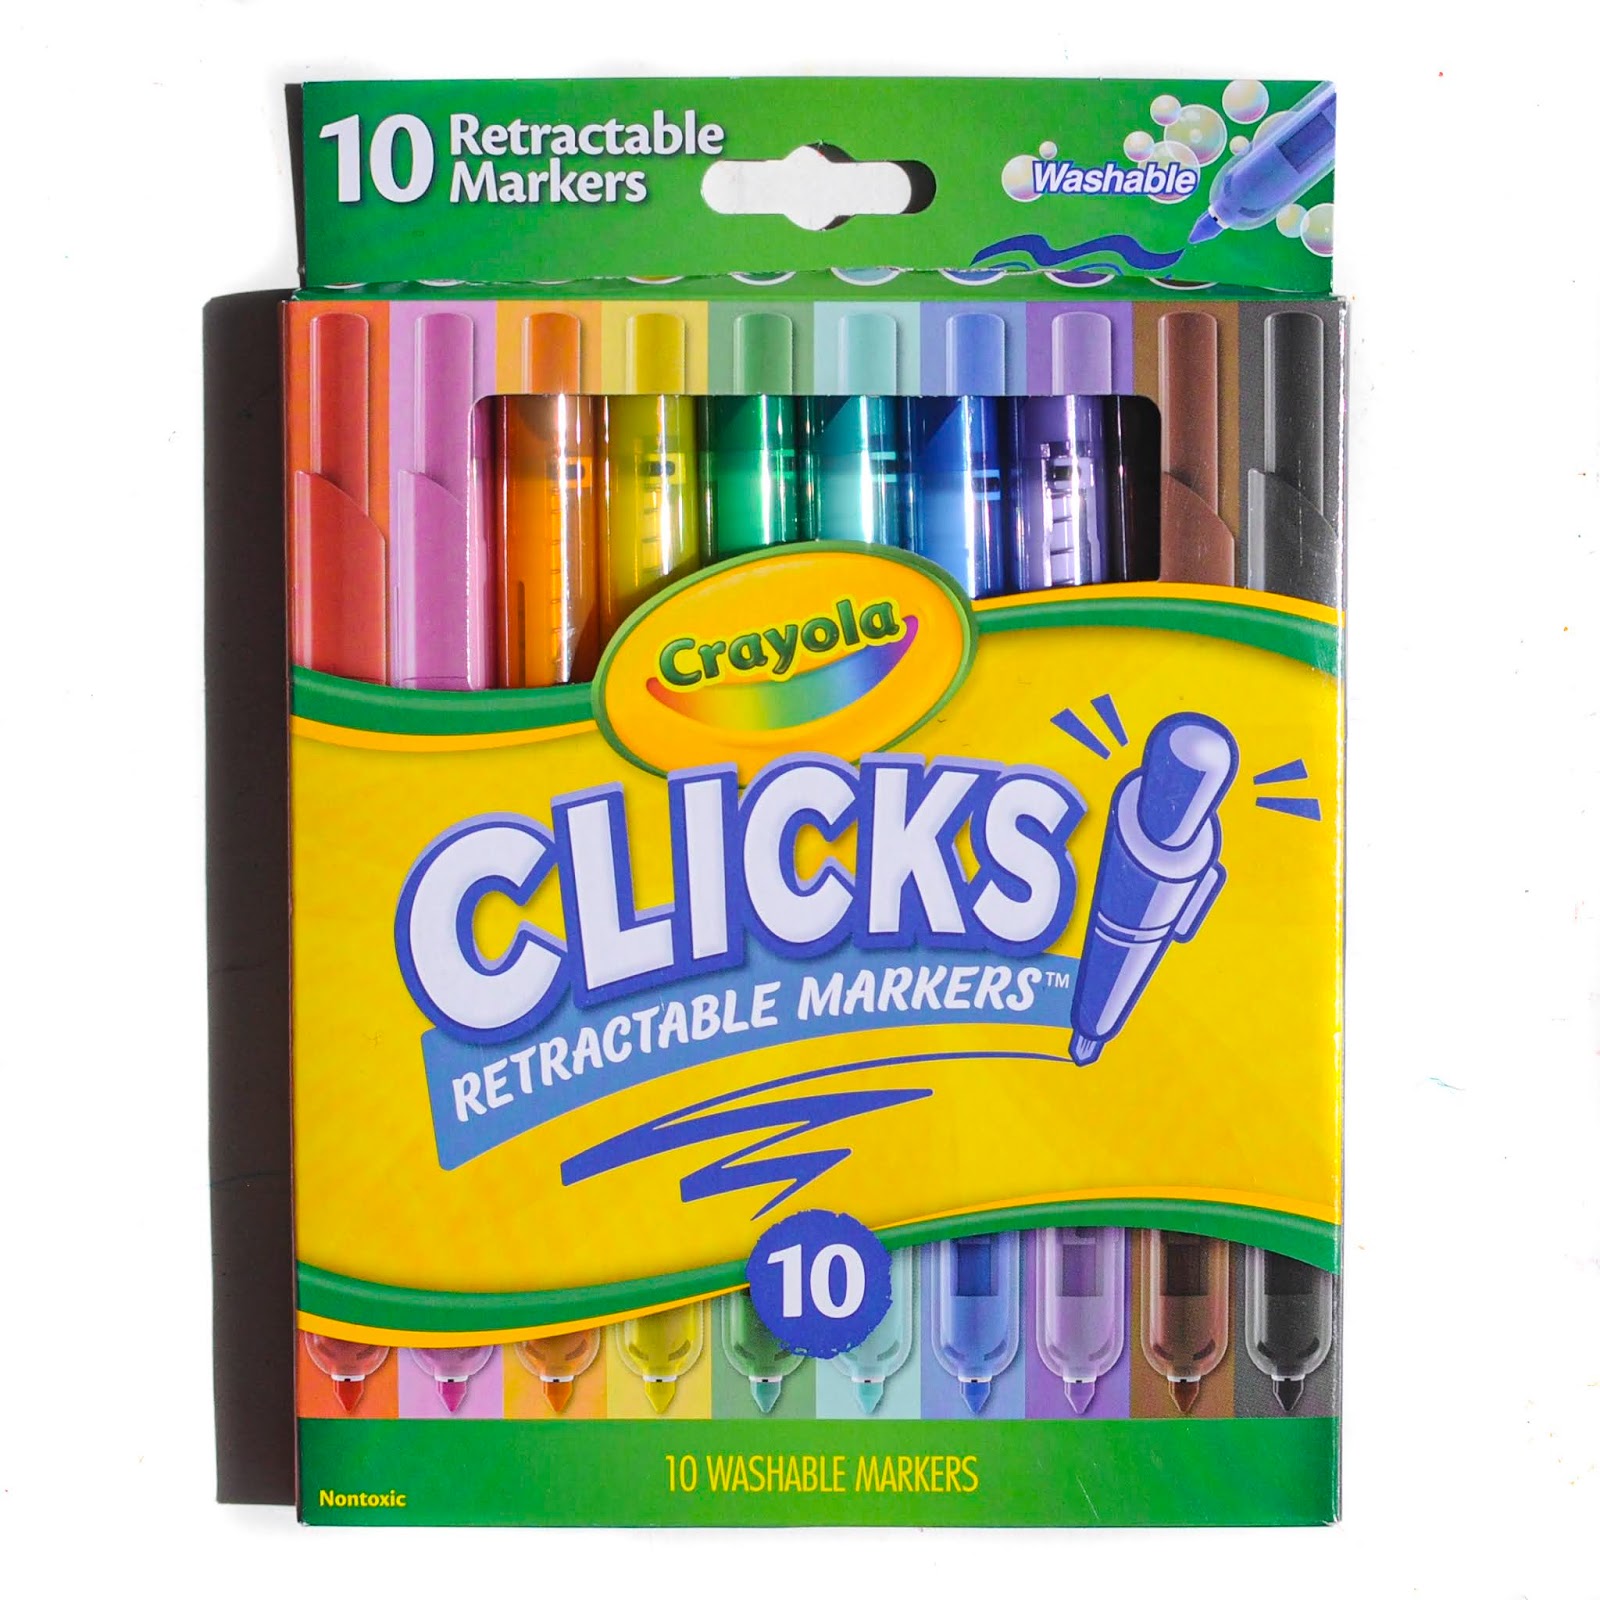 Crayola Clicks Retractable Markers 10 Count